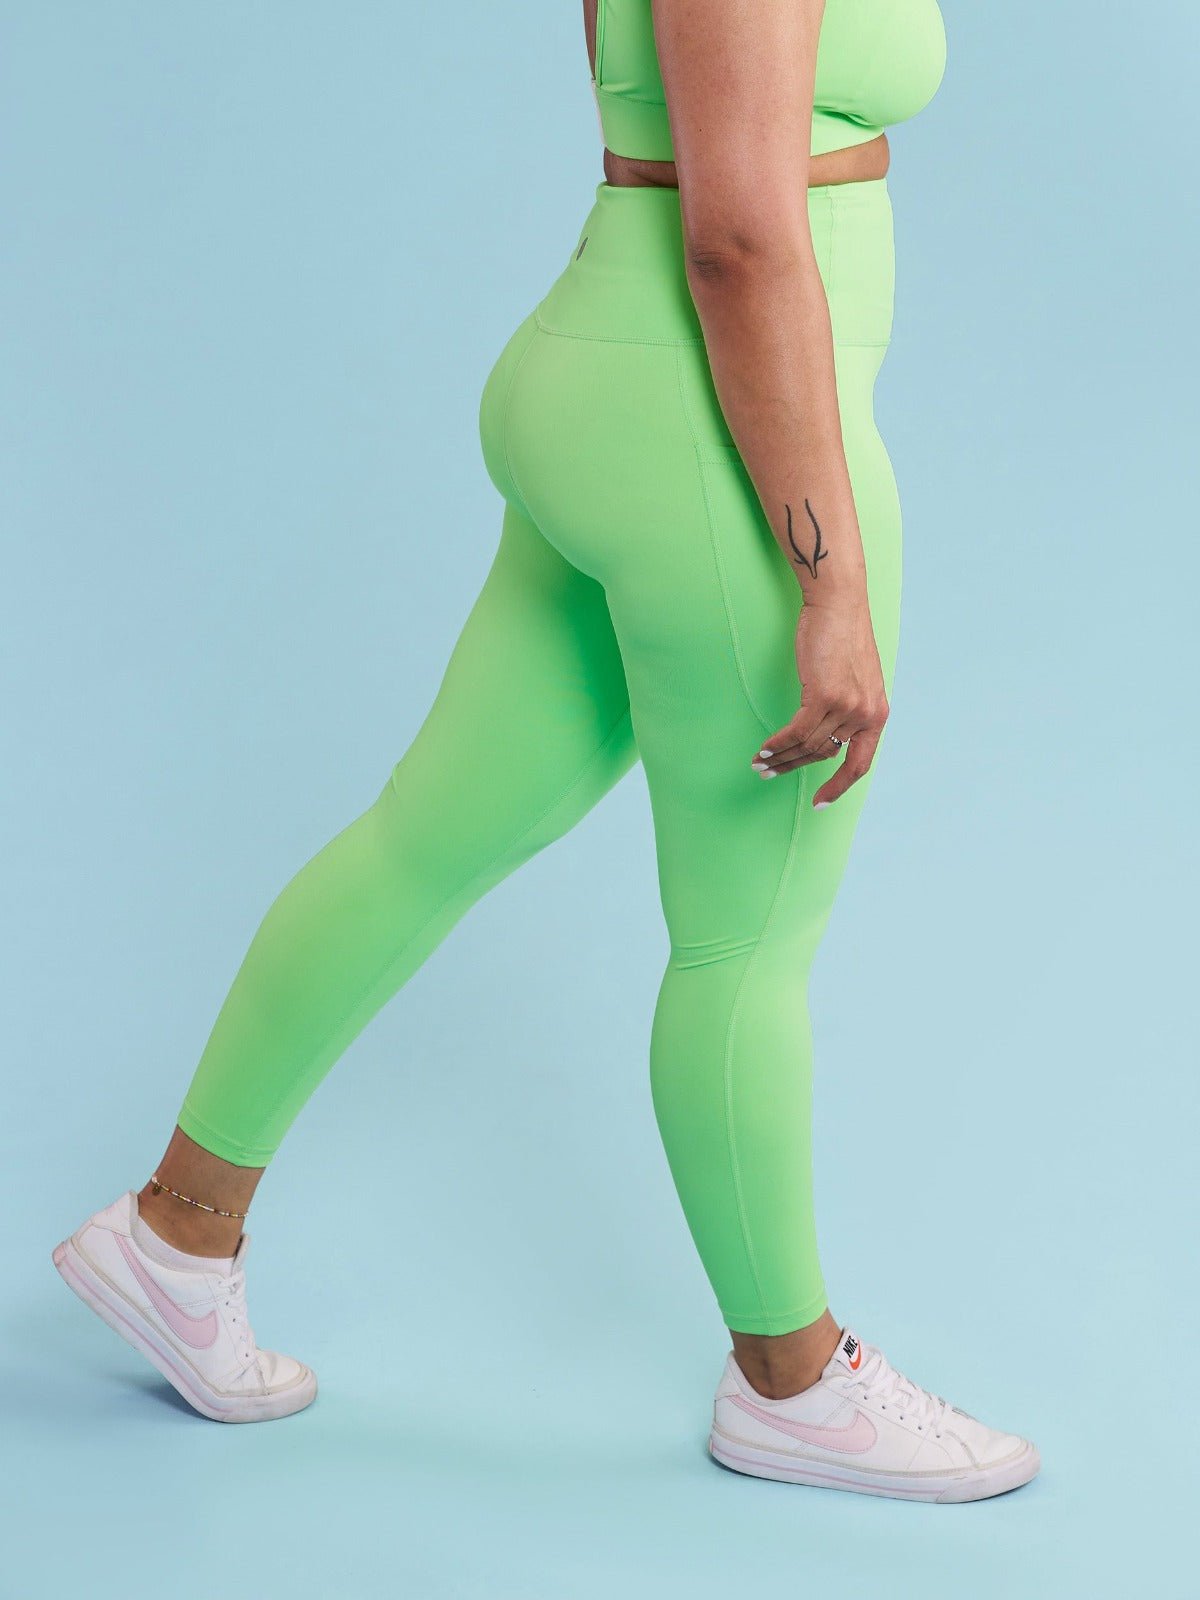 Neon Green Everyday Legging - 7/8 length - 7/8 length petite leggings for short women